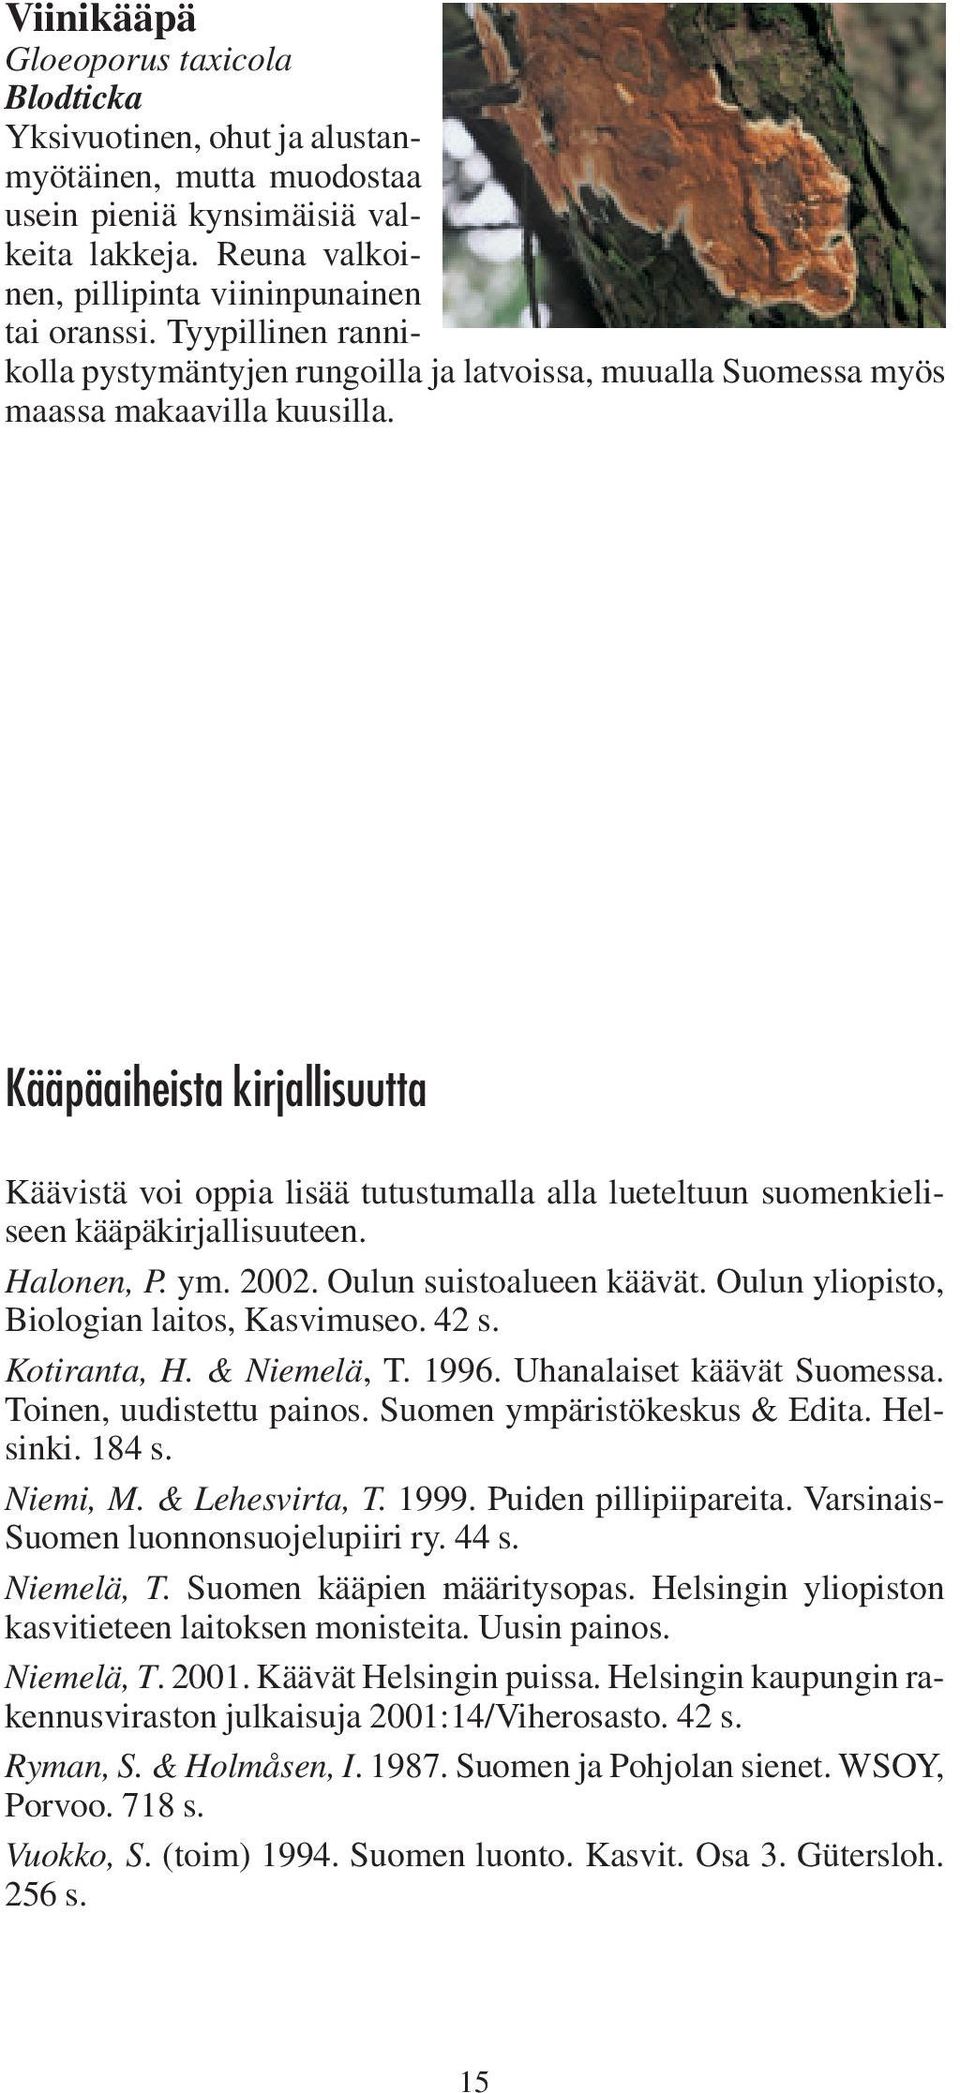 Kääpäaiheista kirjallisuutta Käävistä voi oppia lisää tutustumalla alla lueteltuun suomenkieliseen kääpäkirjallisuuteen. Halonen, P. ym. 2002. Oulun suistoalueen käävät.